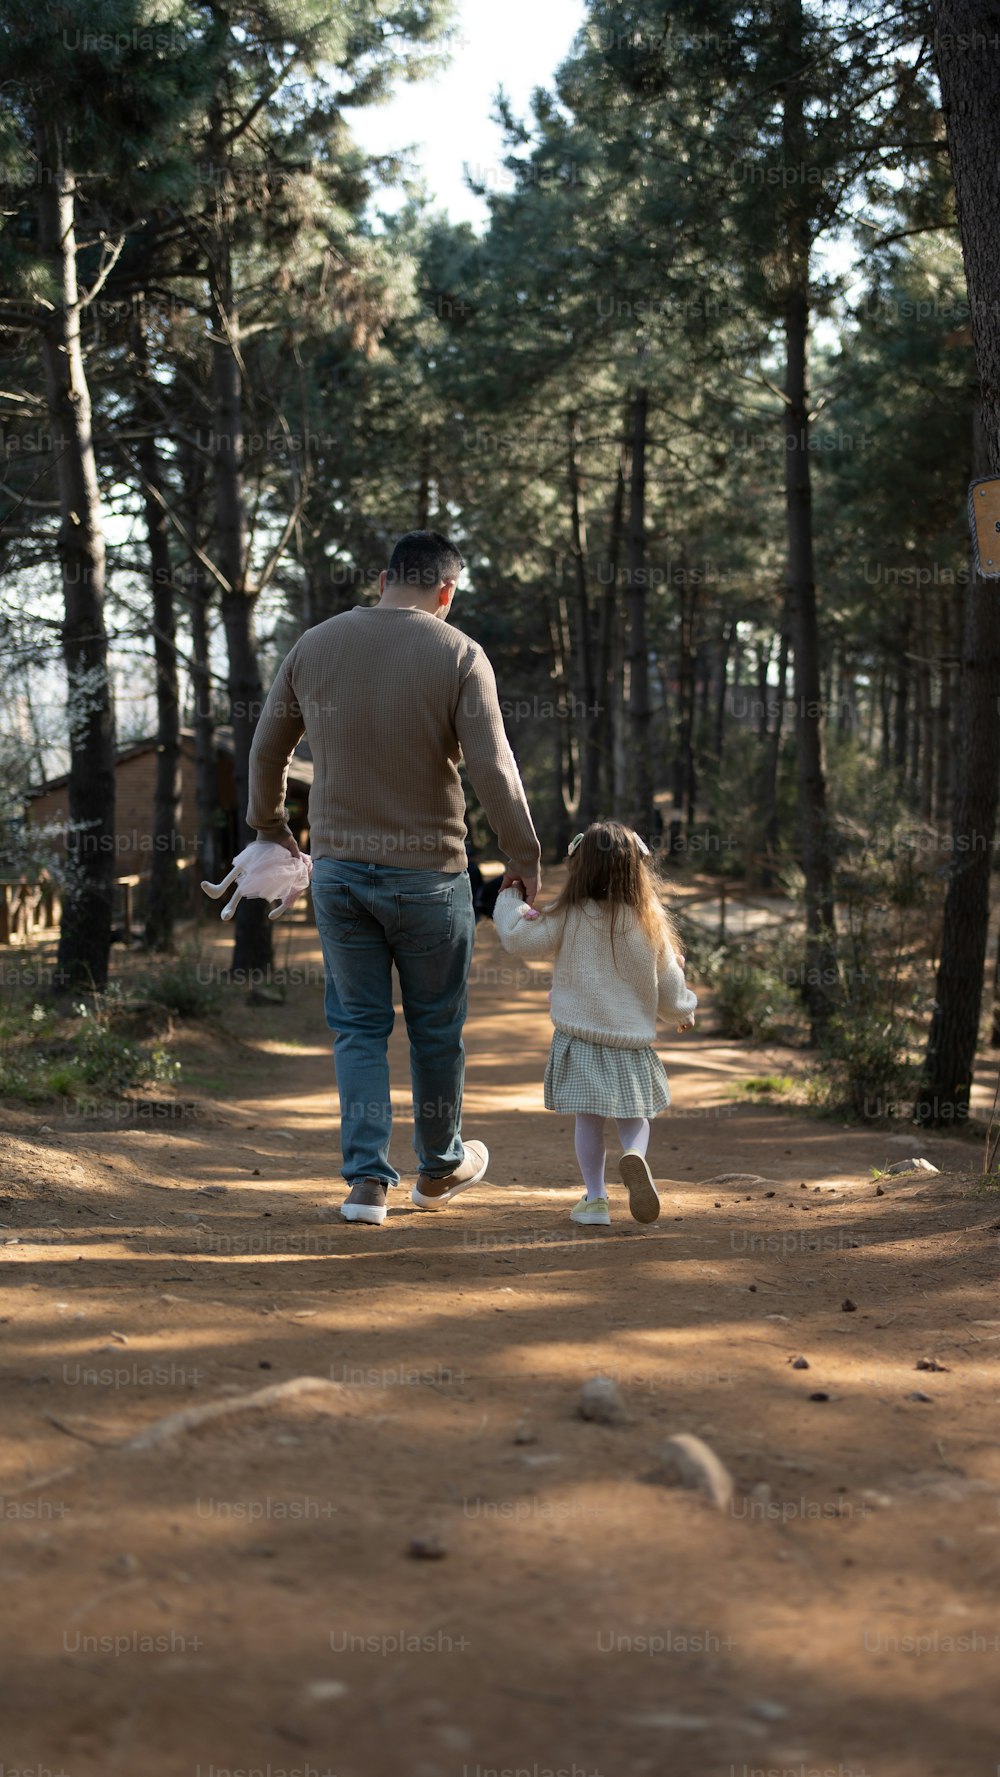 Un hombre y una niña caminando por un camino de tierra